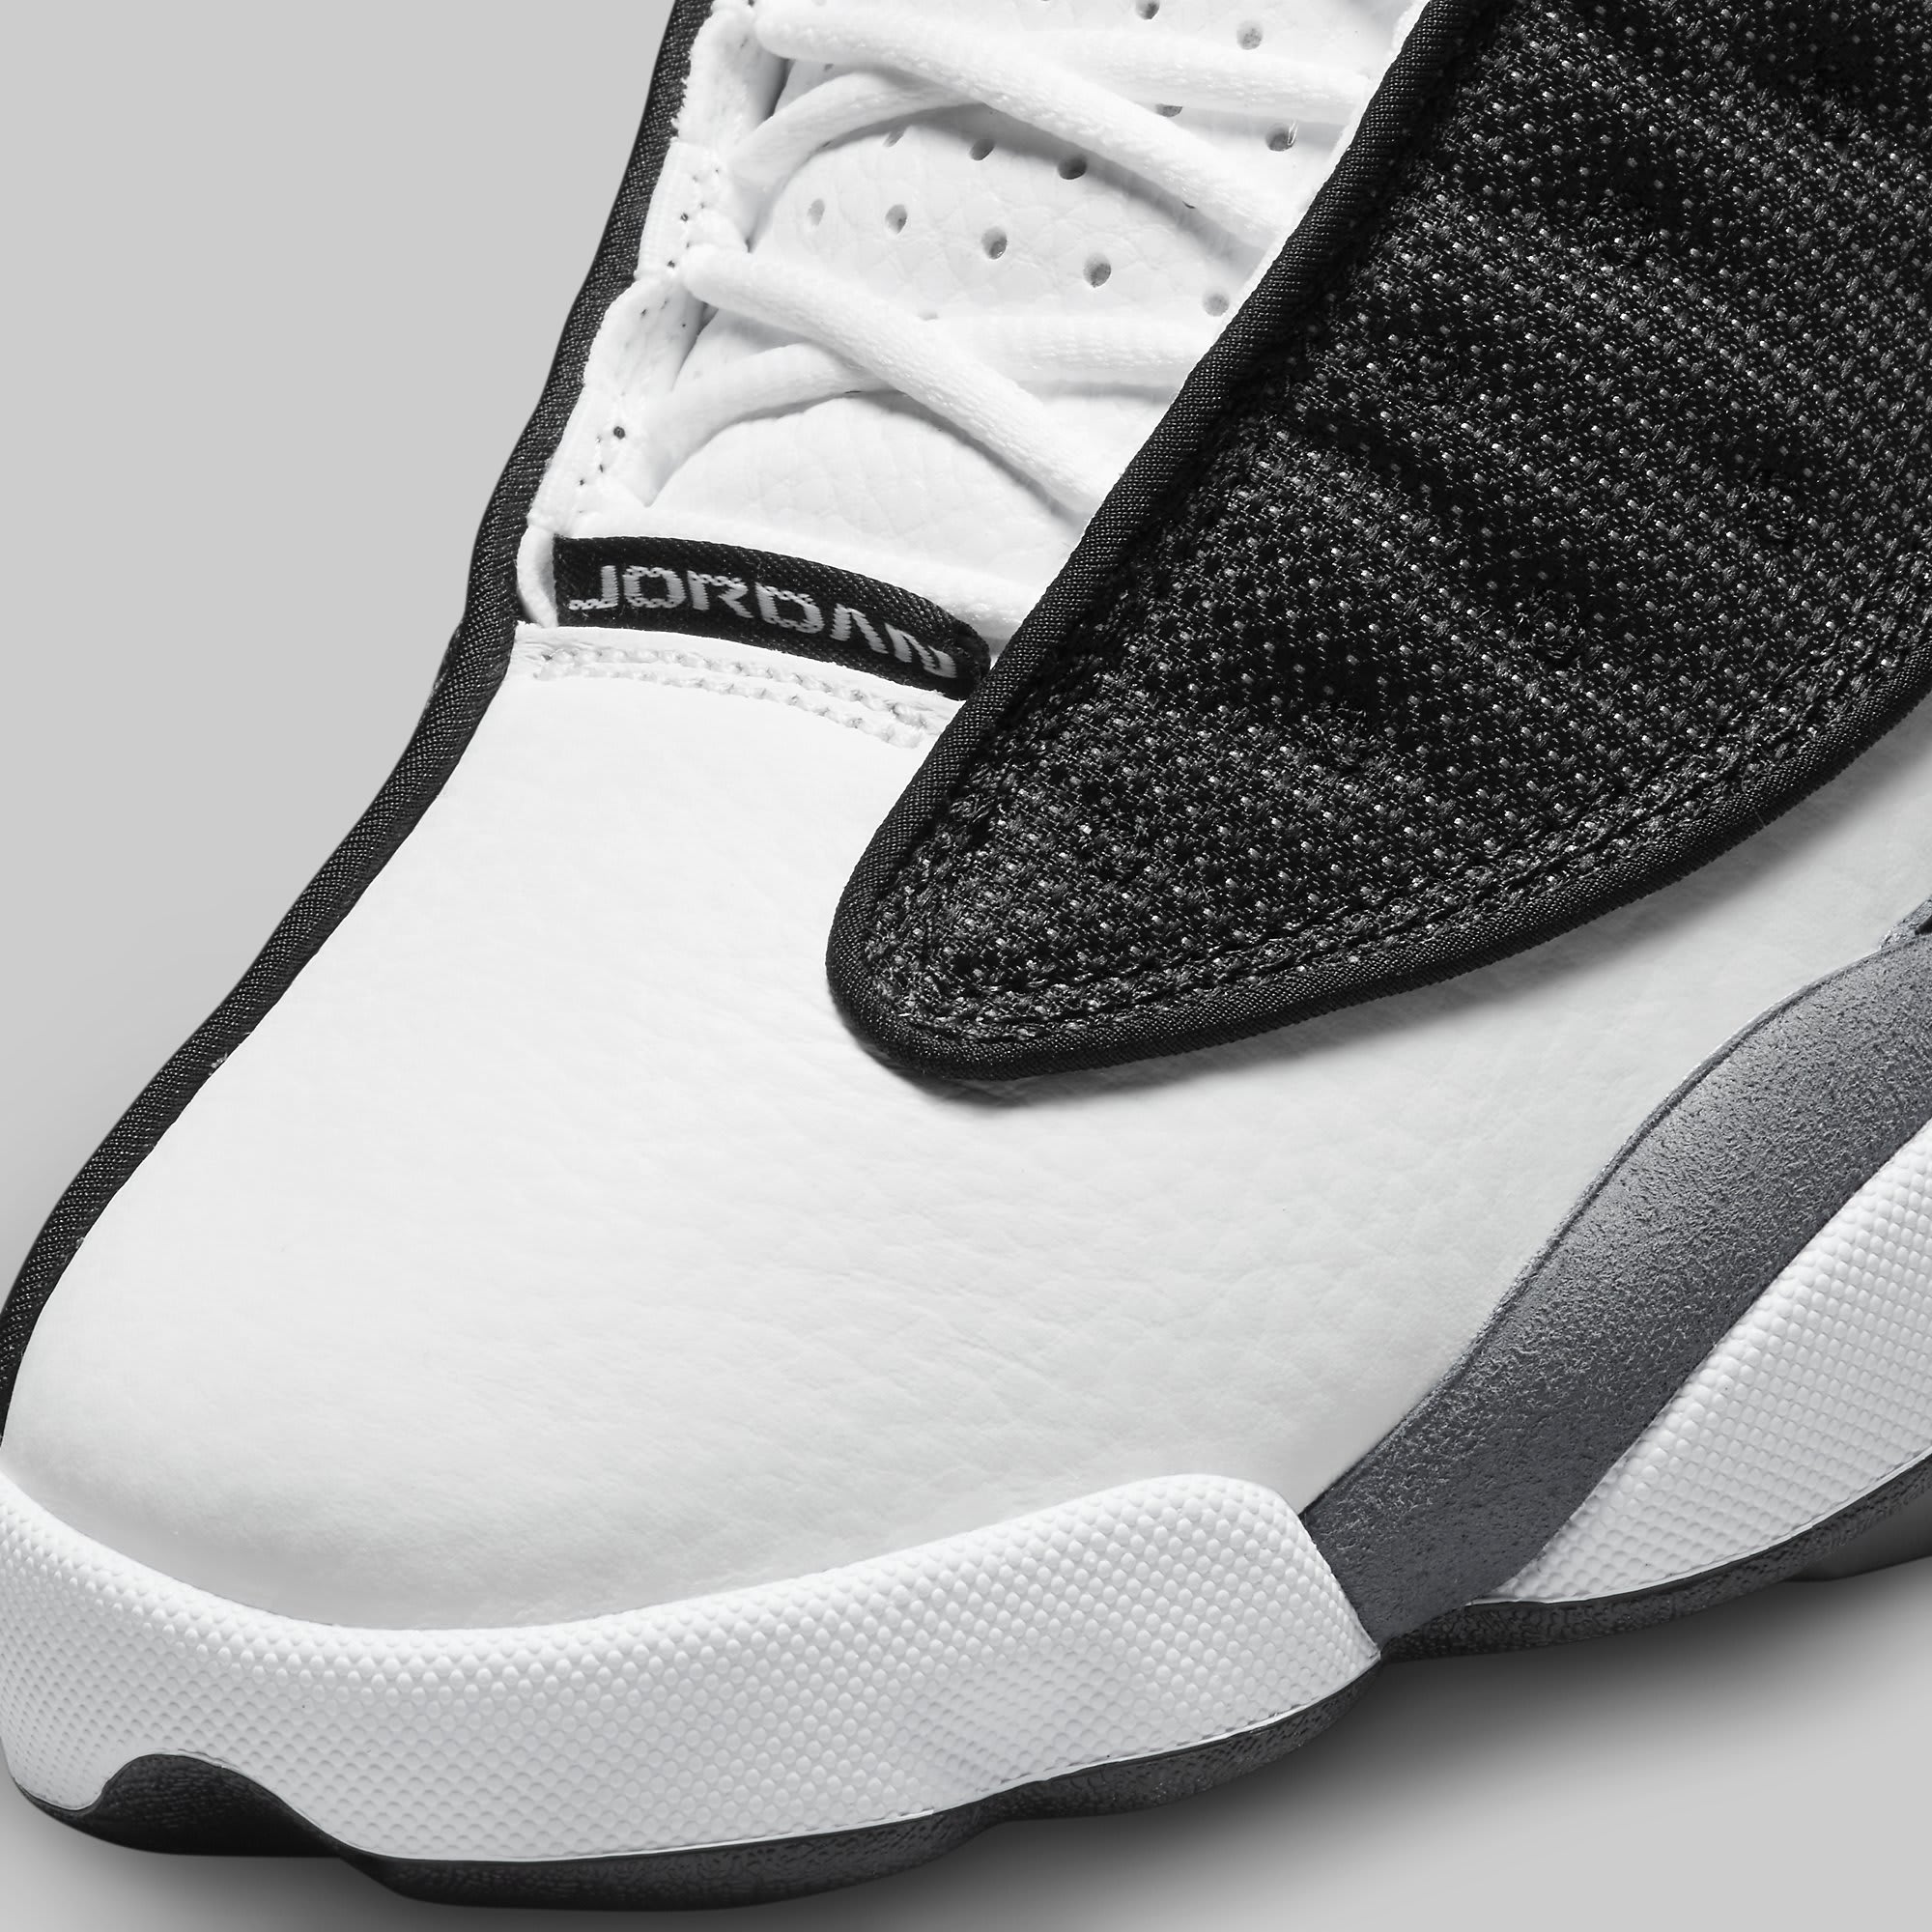 Air Jordan 13 'Flint' Lights Up the JD Sports Lineup - Sneaker Freaker